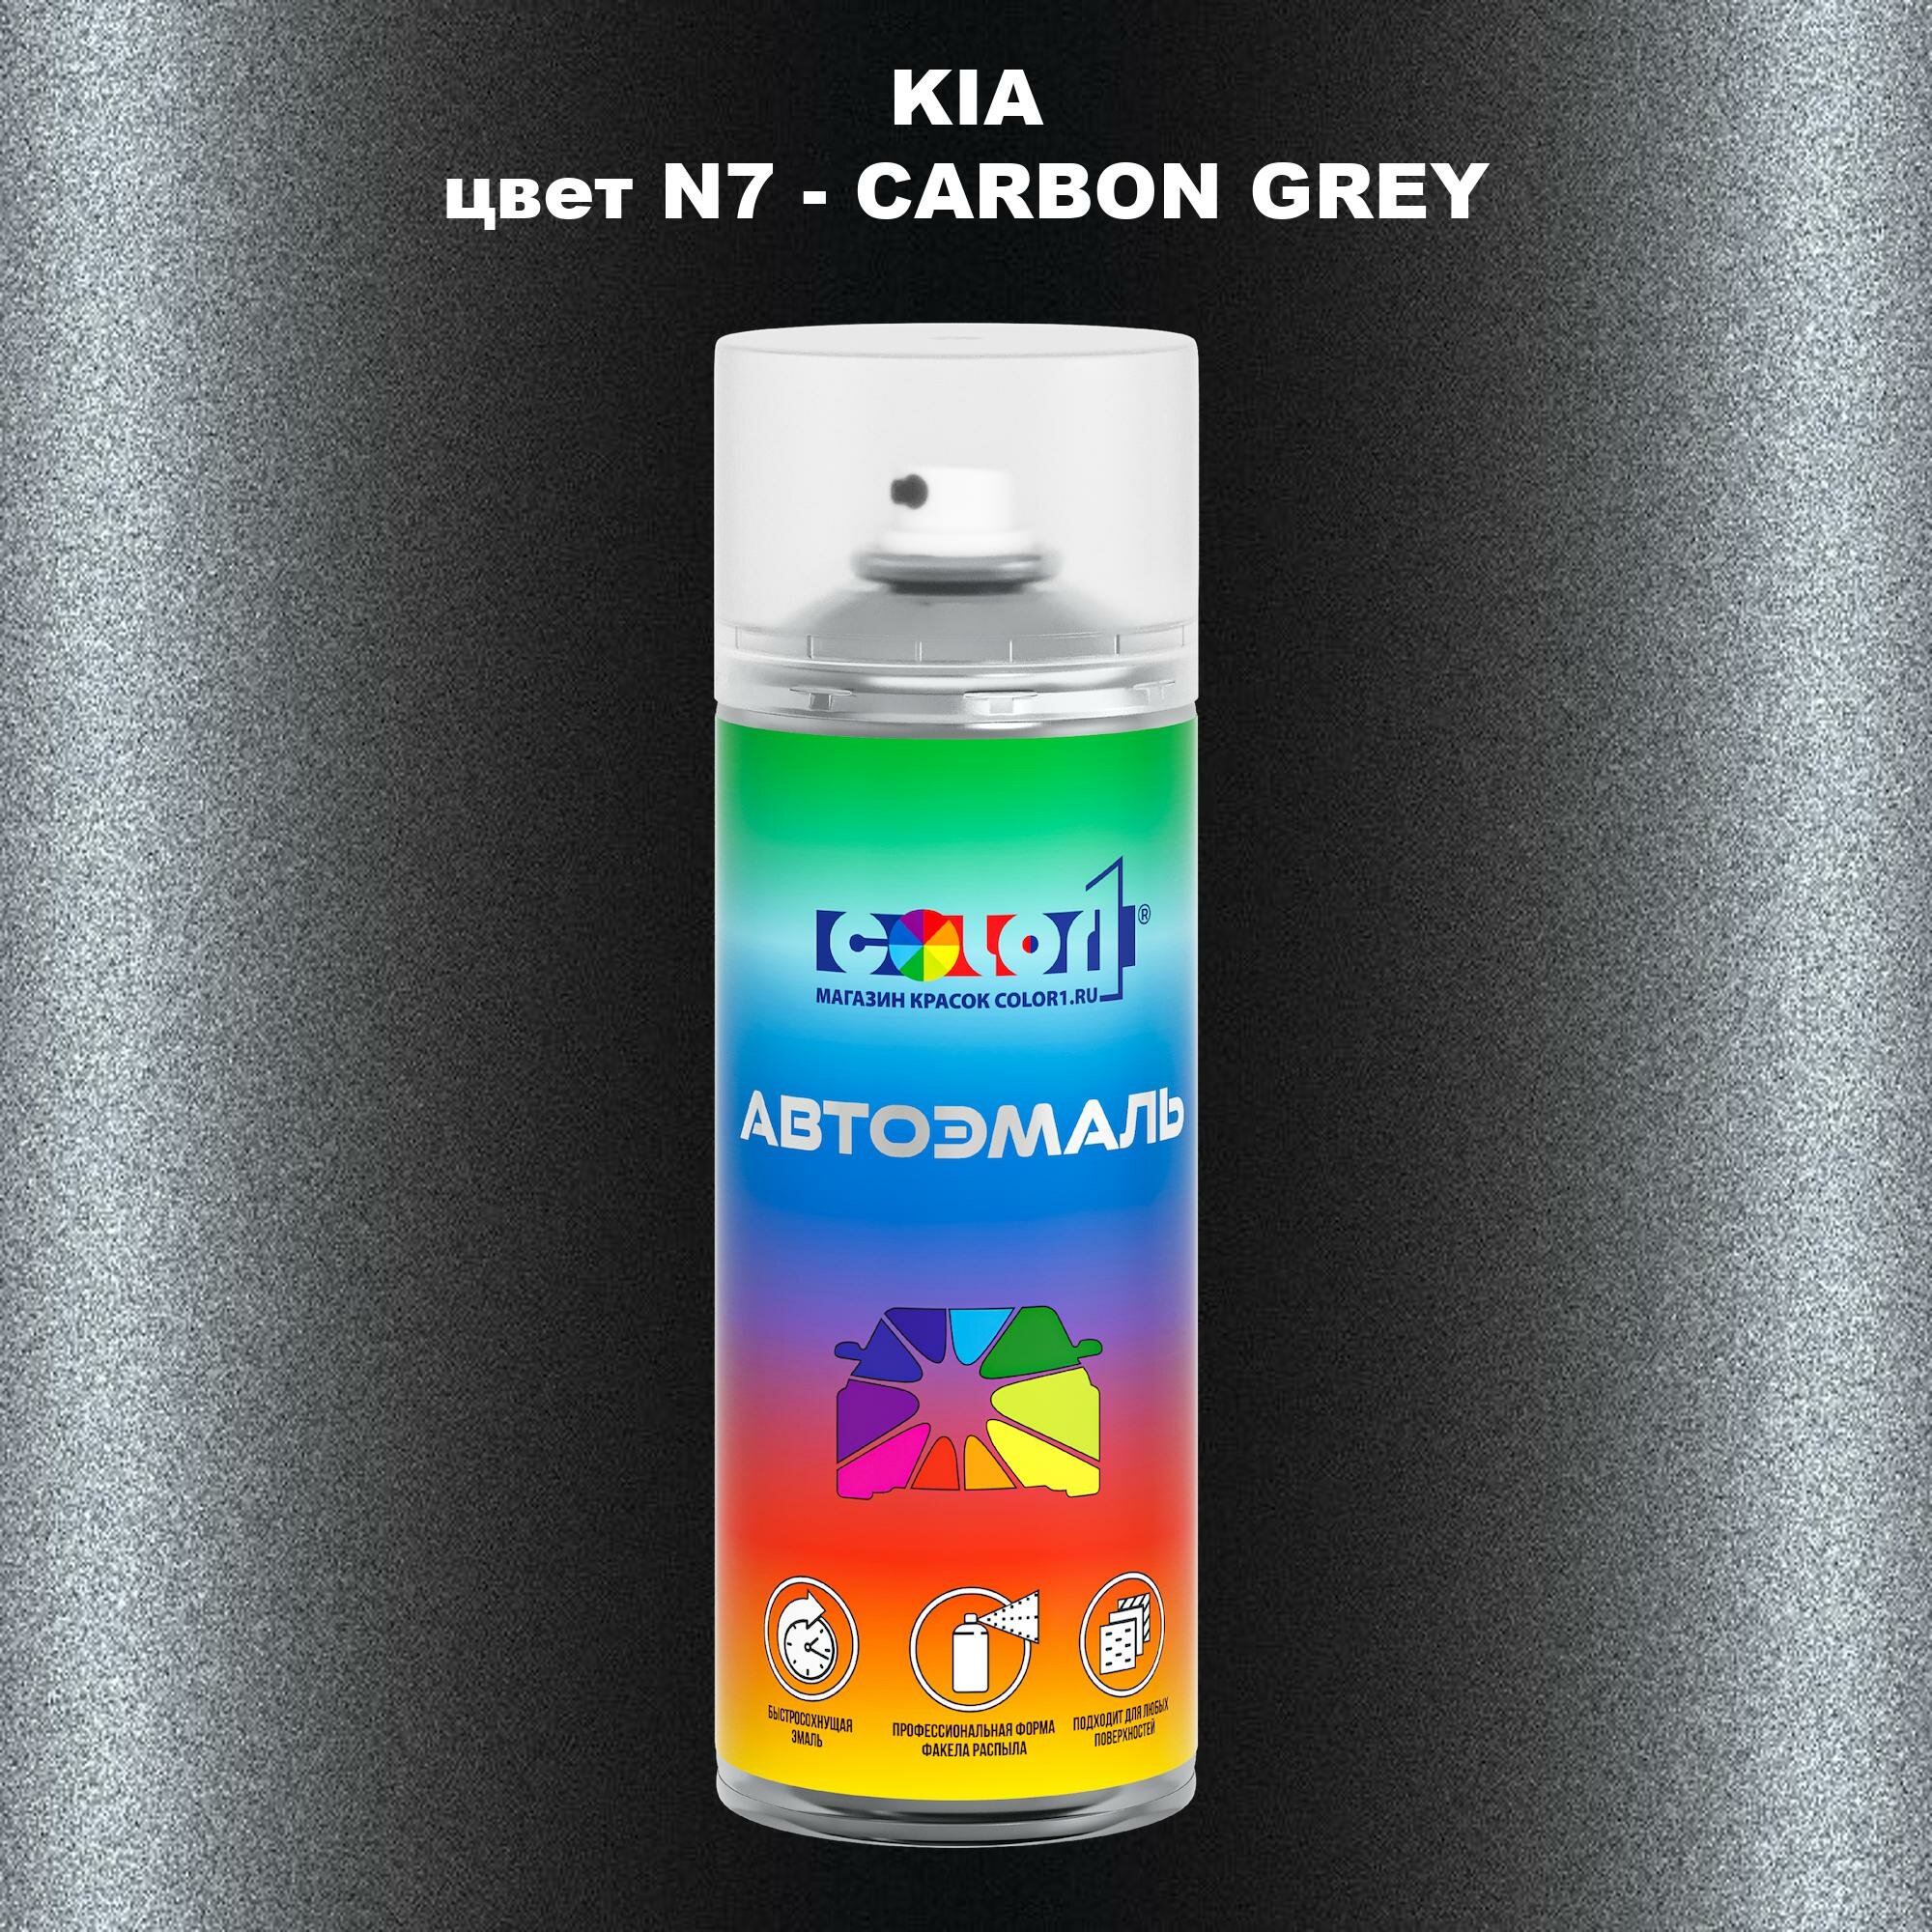 Аэрозольная краска COLOR1 для KIA, цвет N7 - CARBON GREY